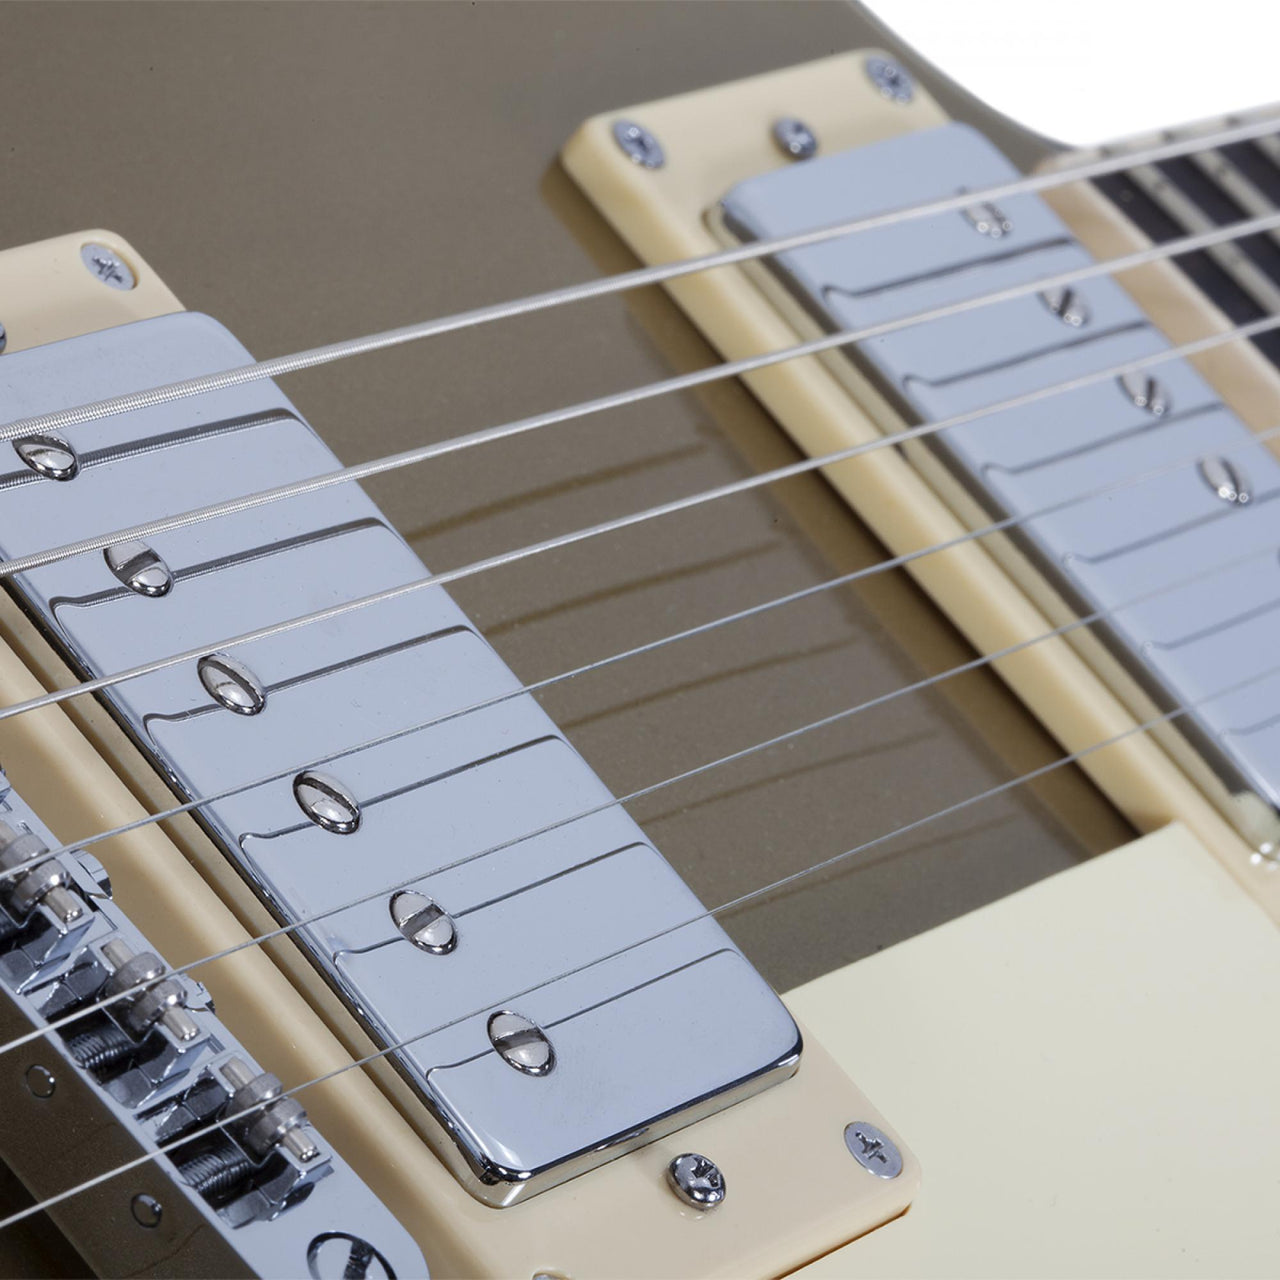 Guitarra Electrica Schecter Corsair Gold Top Semi Solida